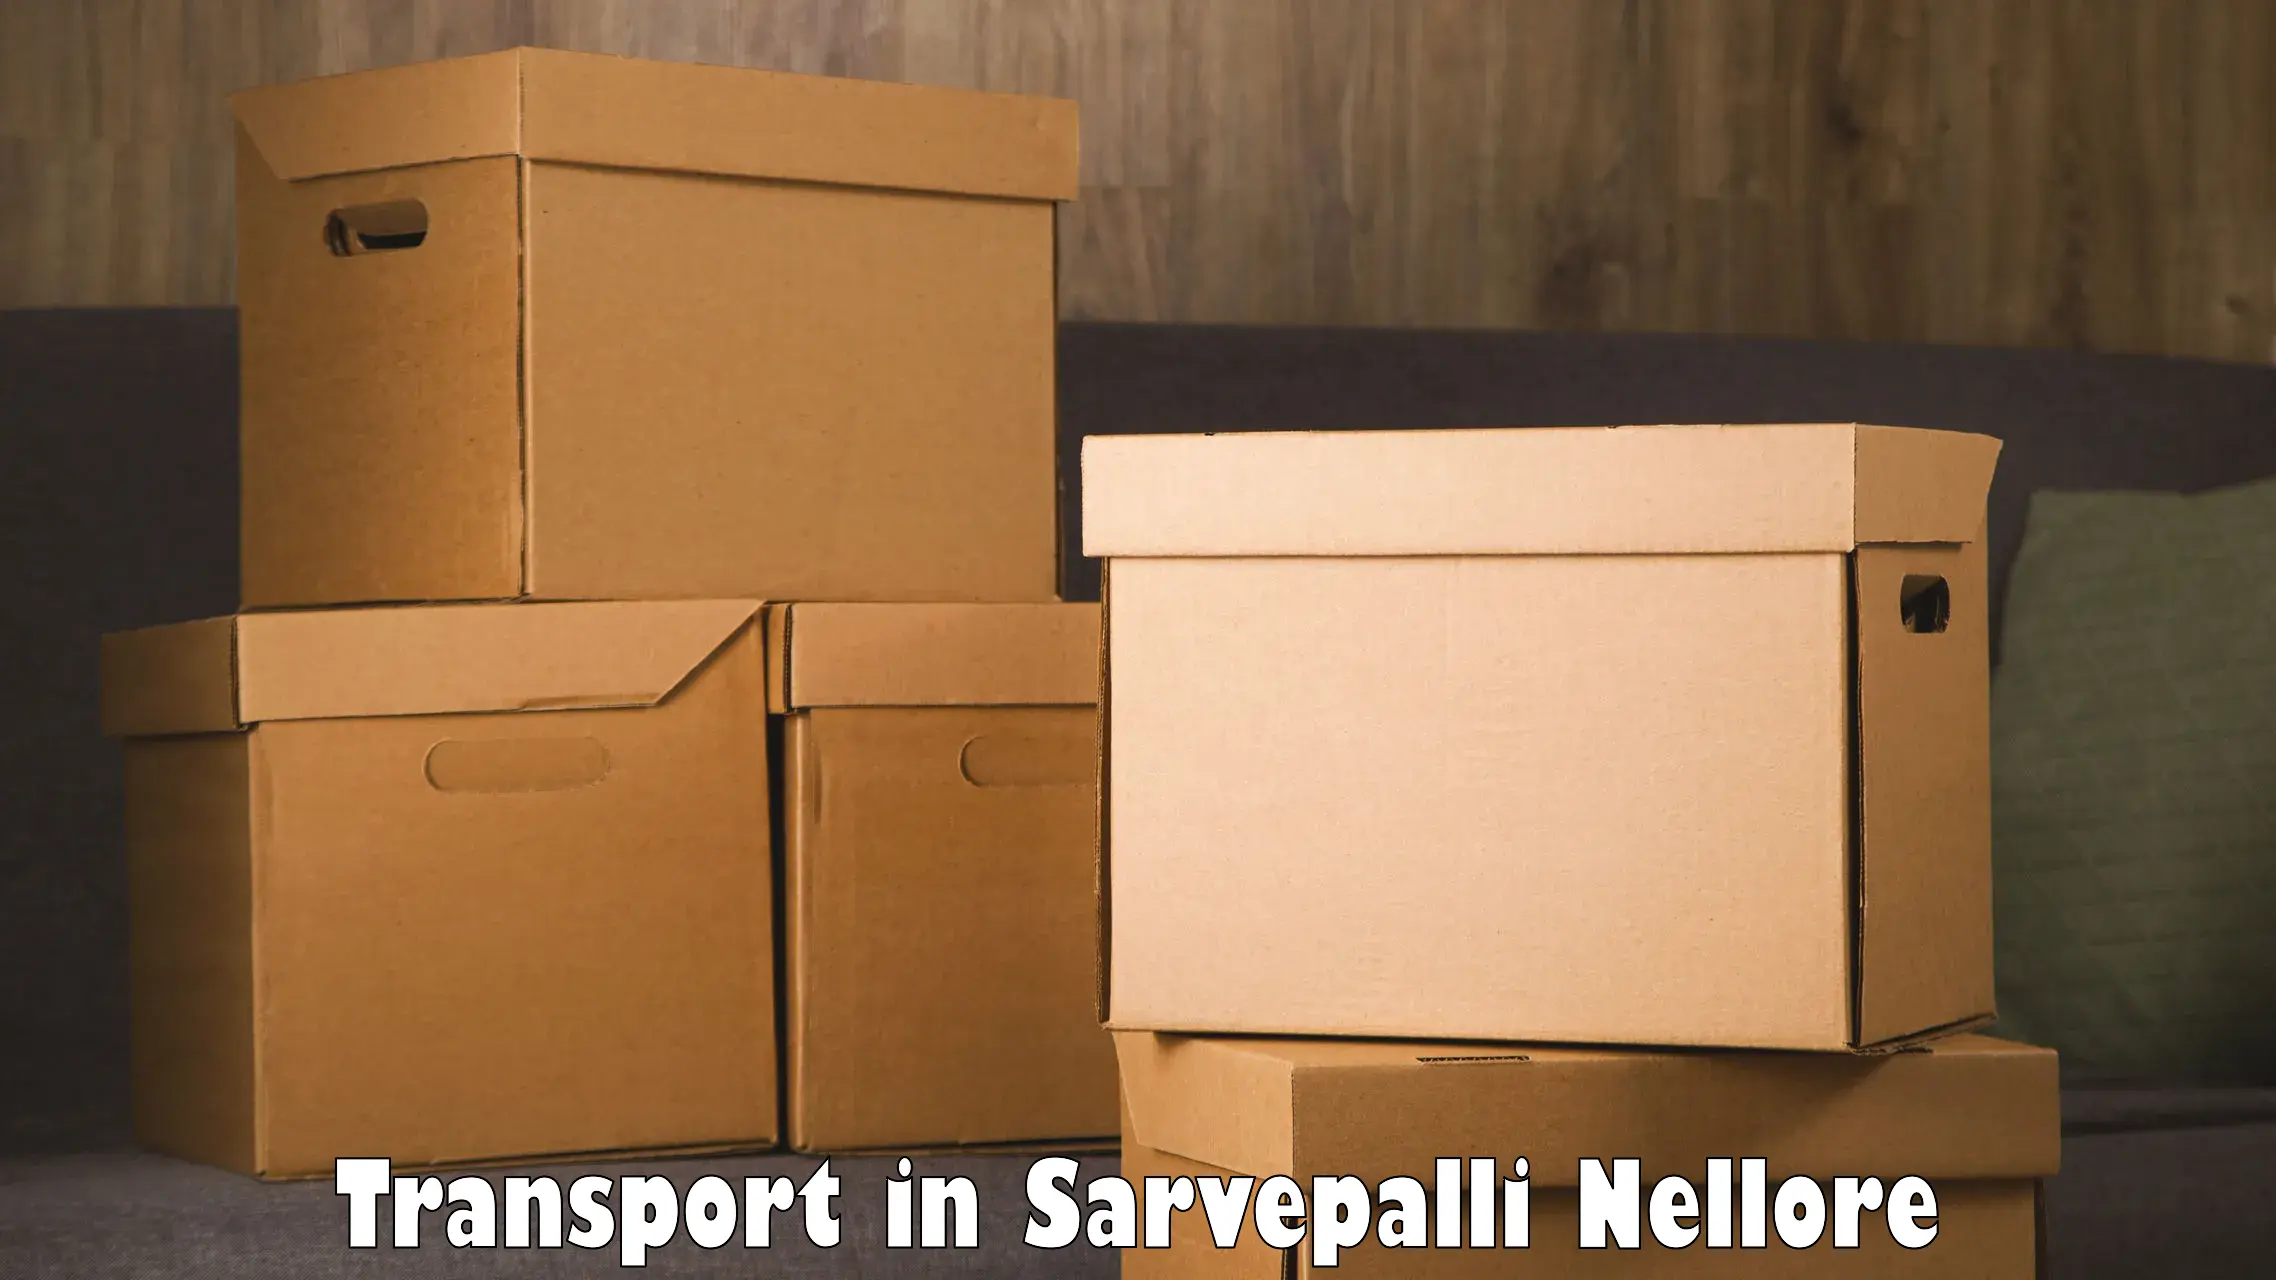 Lorry transport service in Sarvepalli Nellore